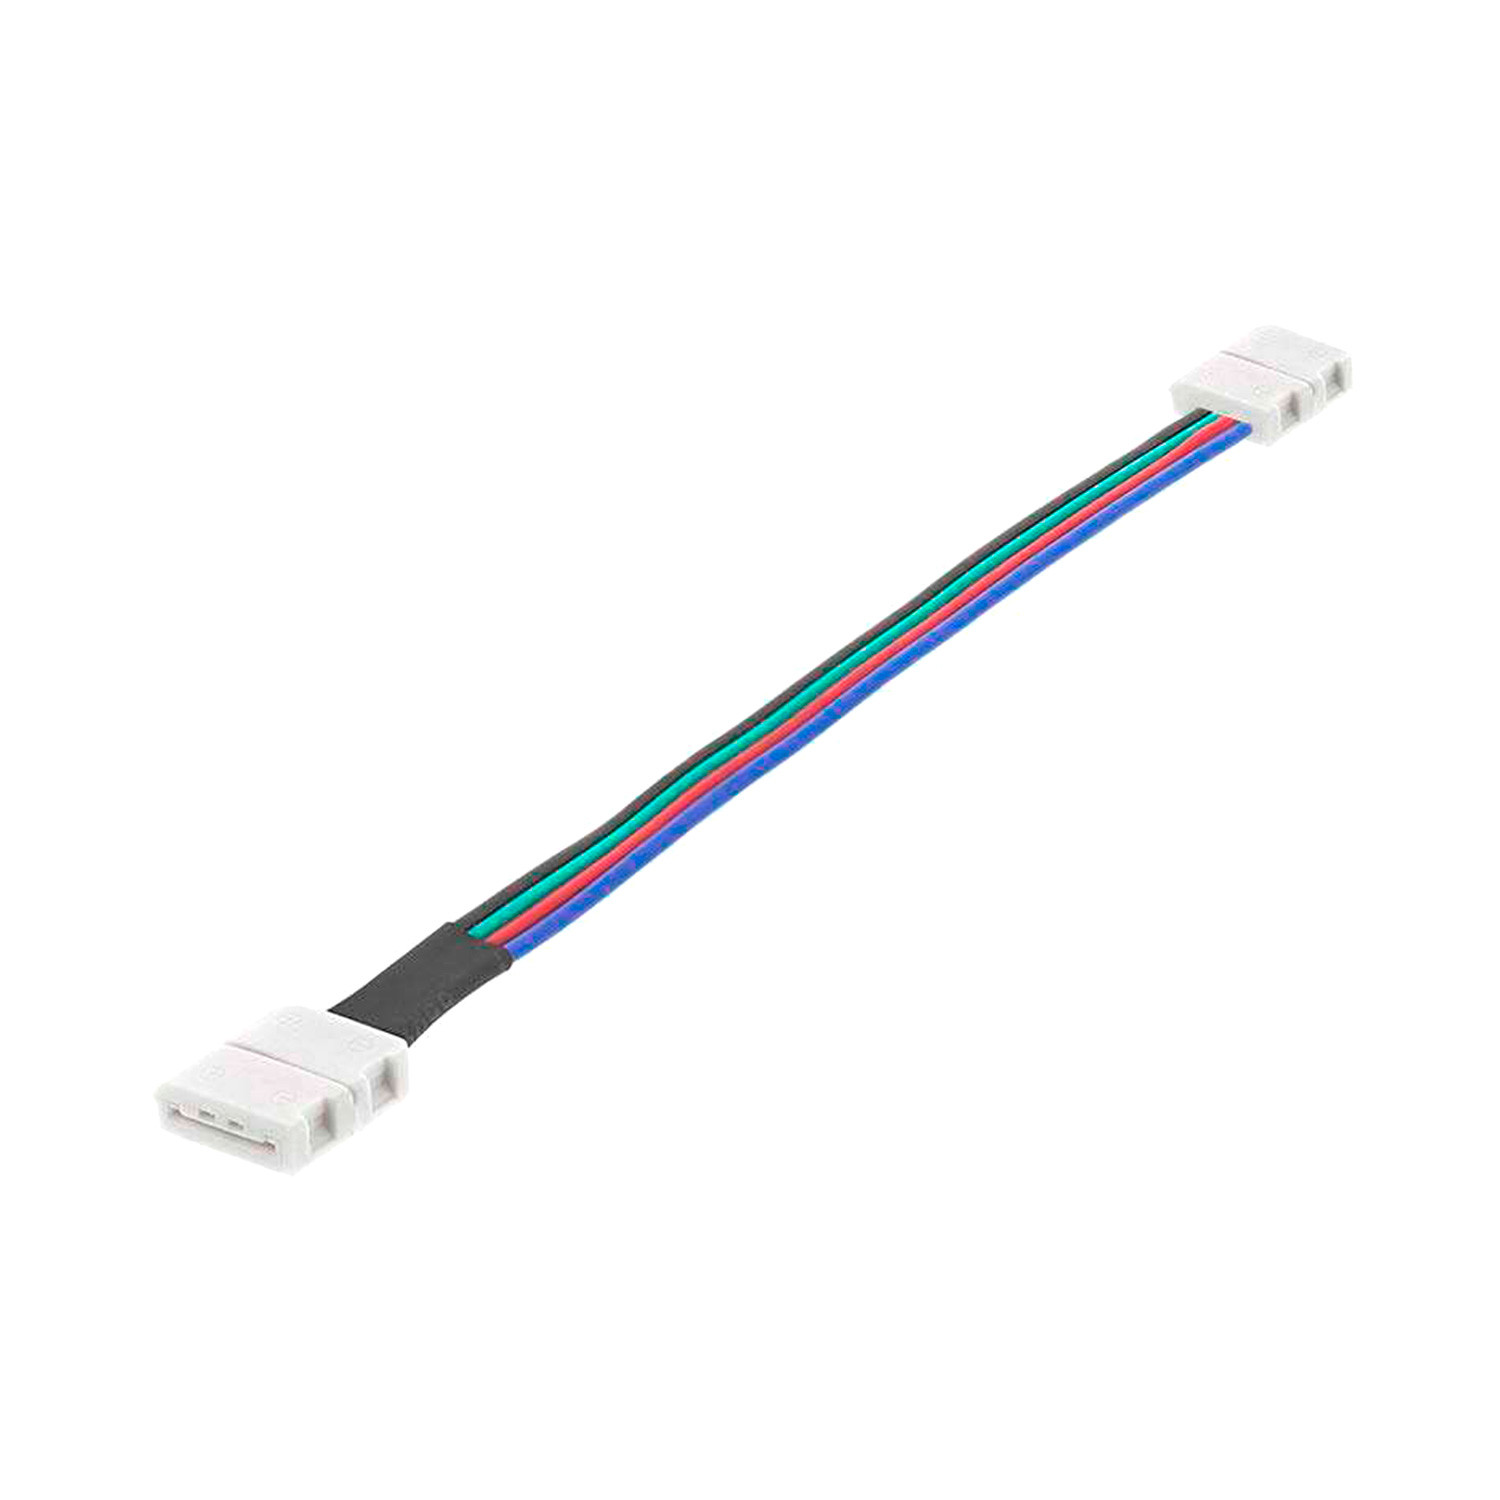 Connecteur LED étanche, raccord LED jack femelle pour bande LED flexible